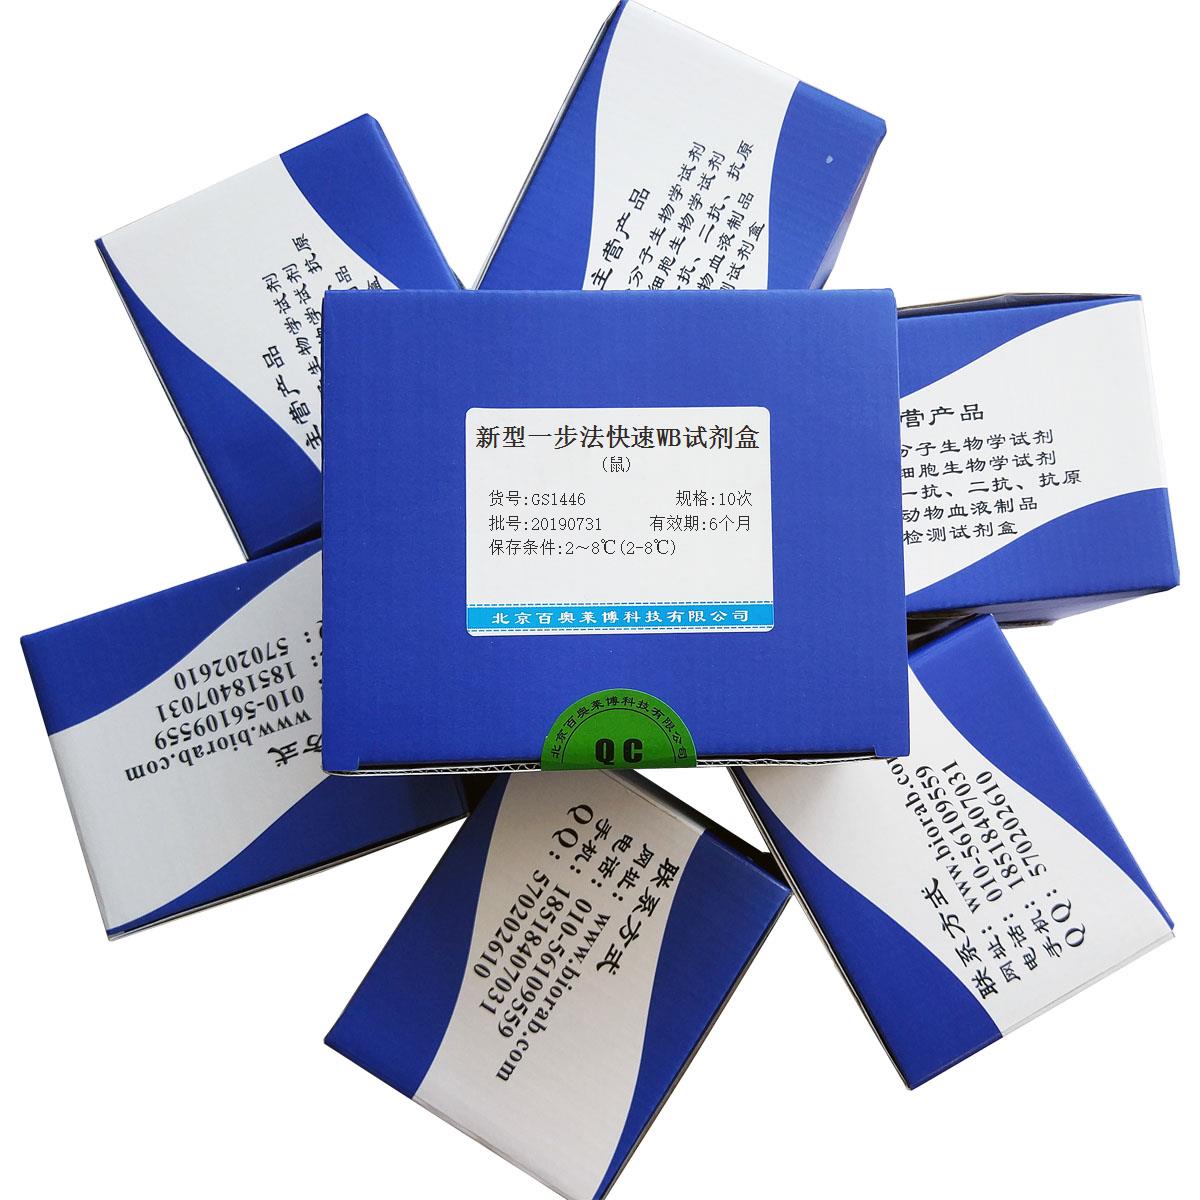 新型一步法快速WB试剂盒(鼠)北京厂家